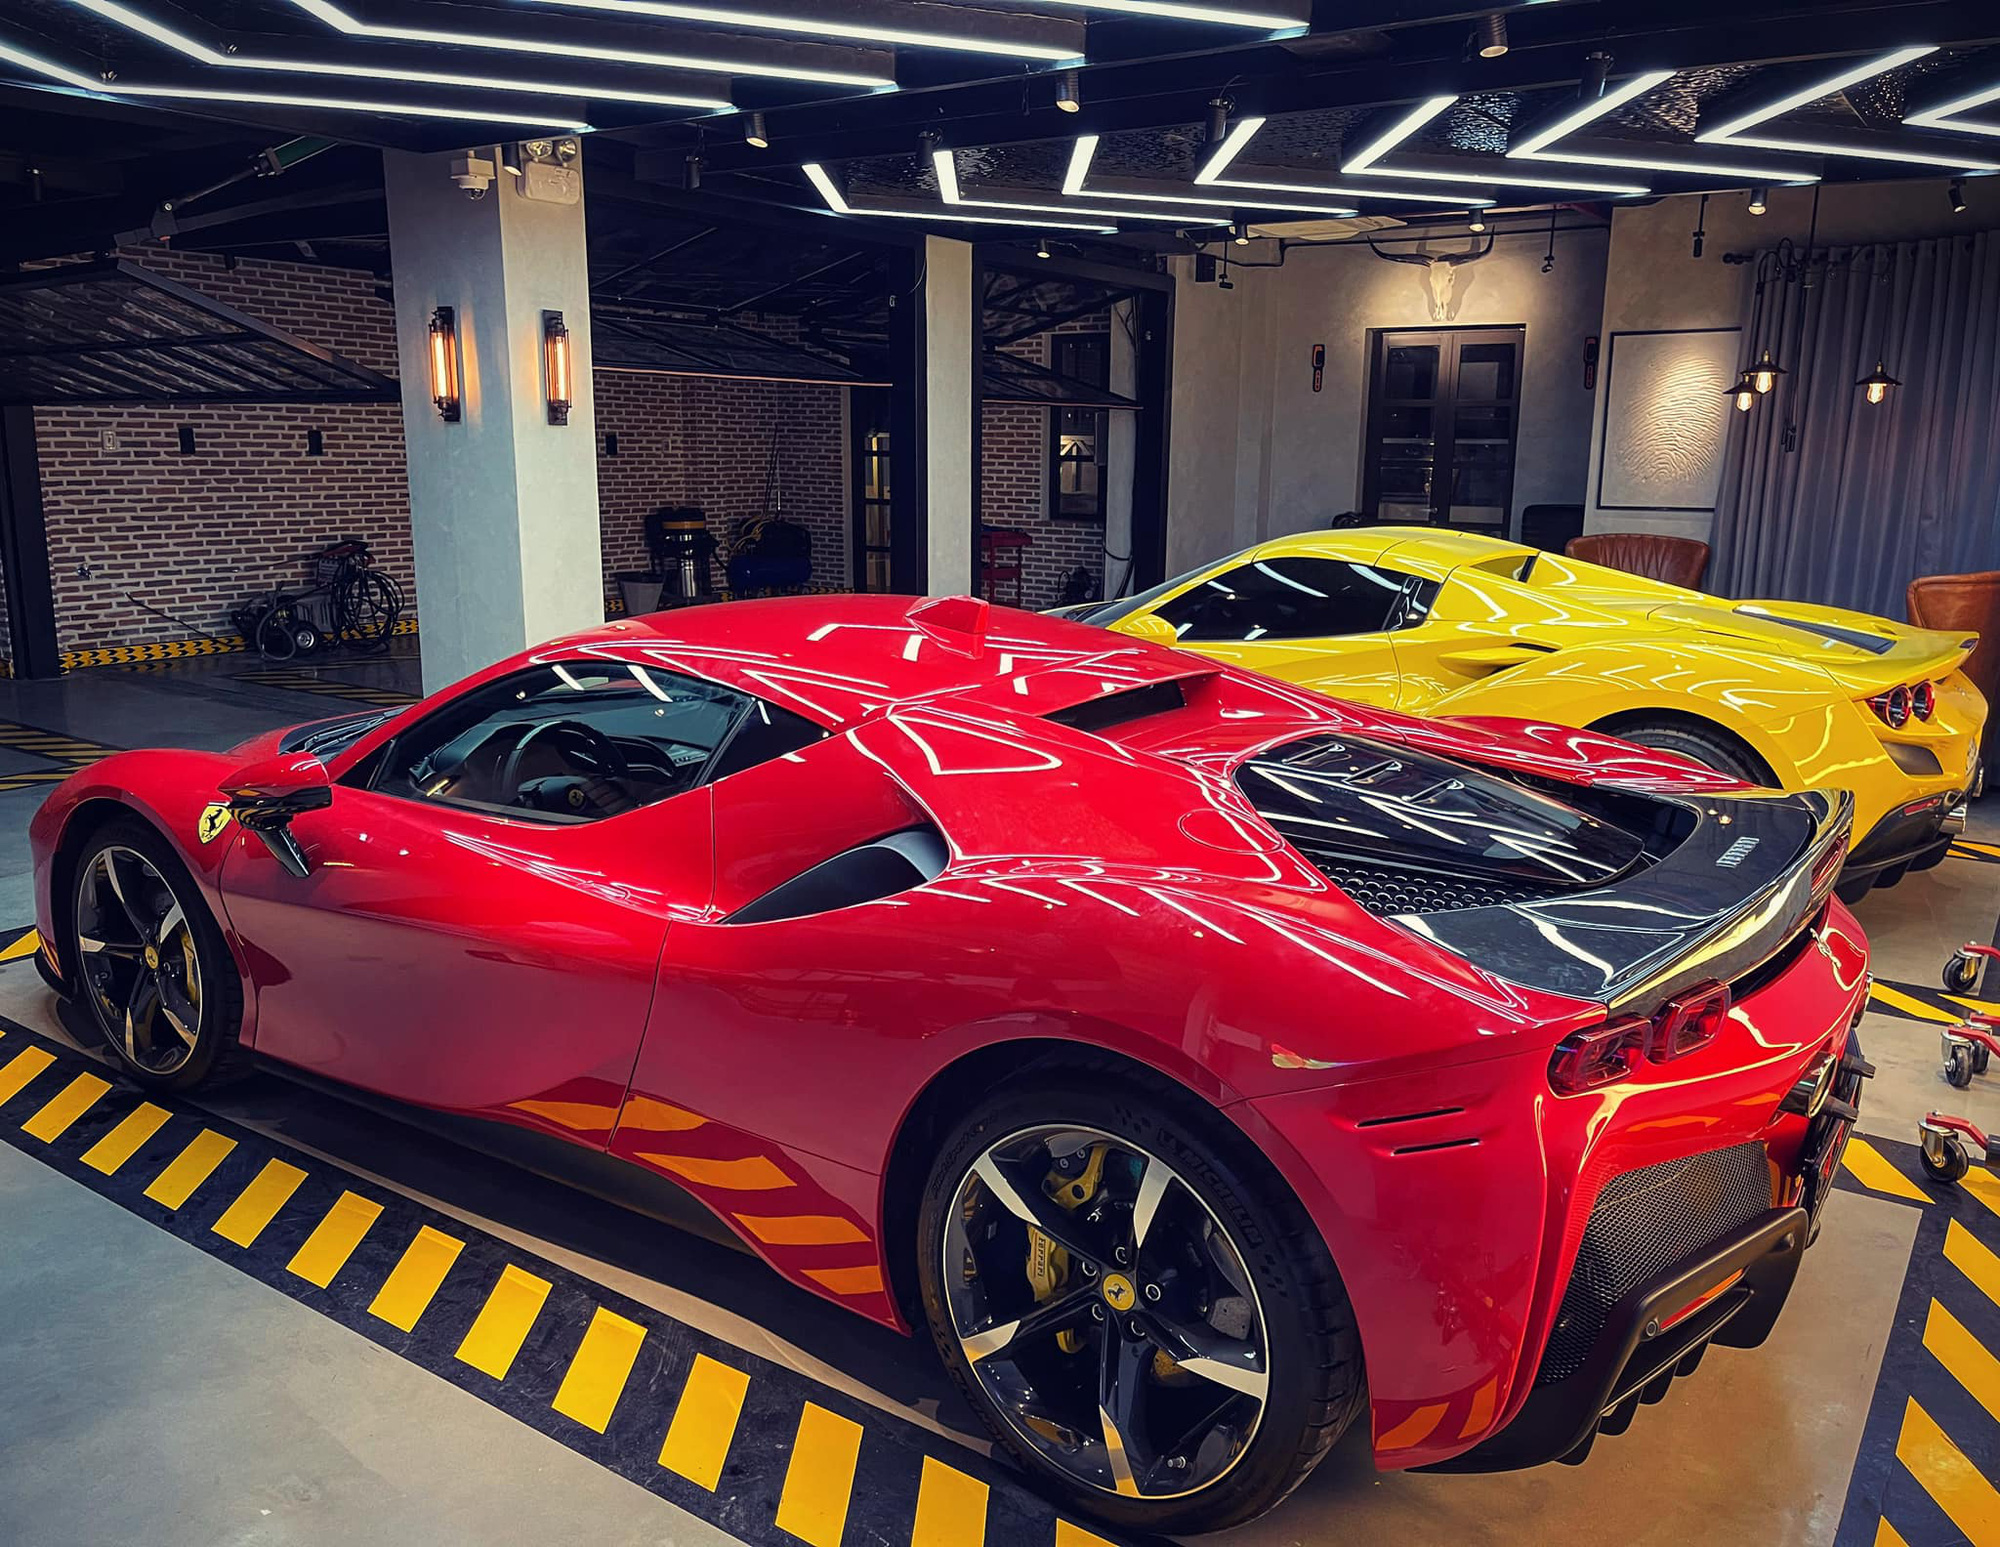 Ferrari SF90 Stradale thứ hai về Việt Nam đã có chủ, chung garage với một chiếc siêu xe đình đám không kém - Ảnh 1.